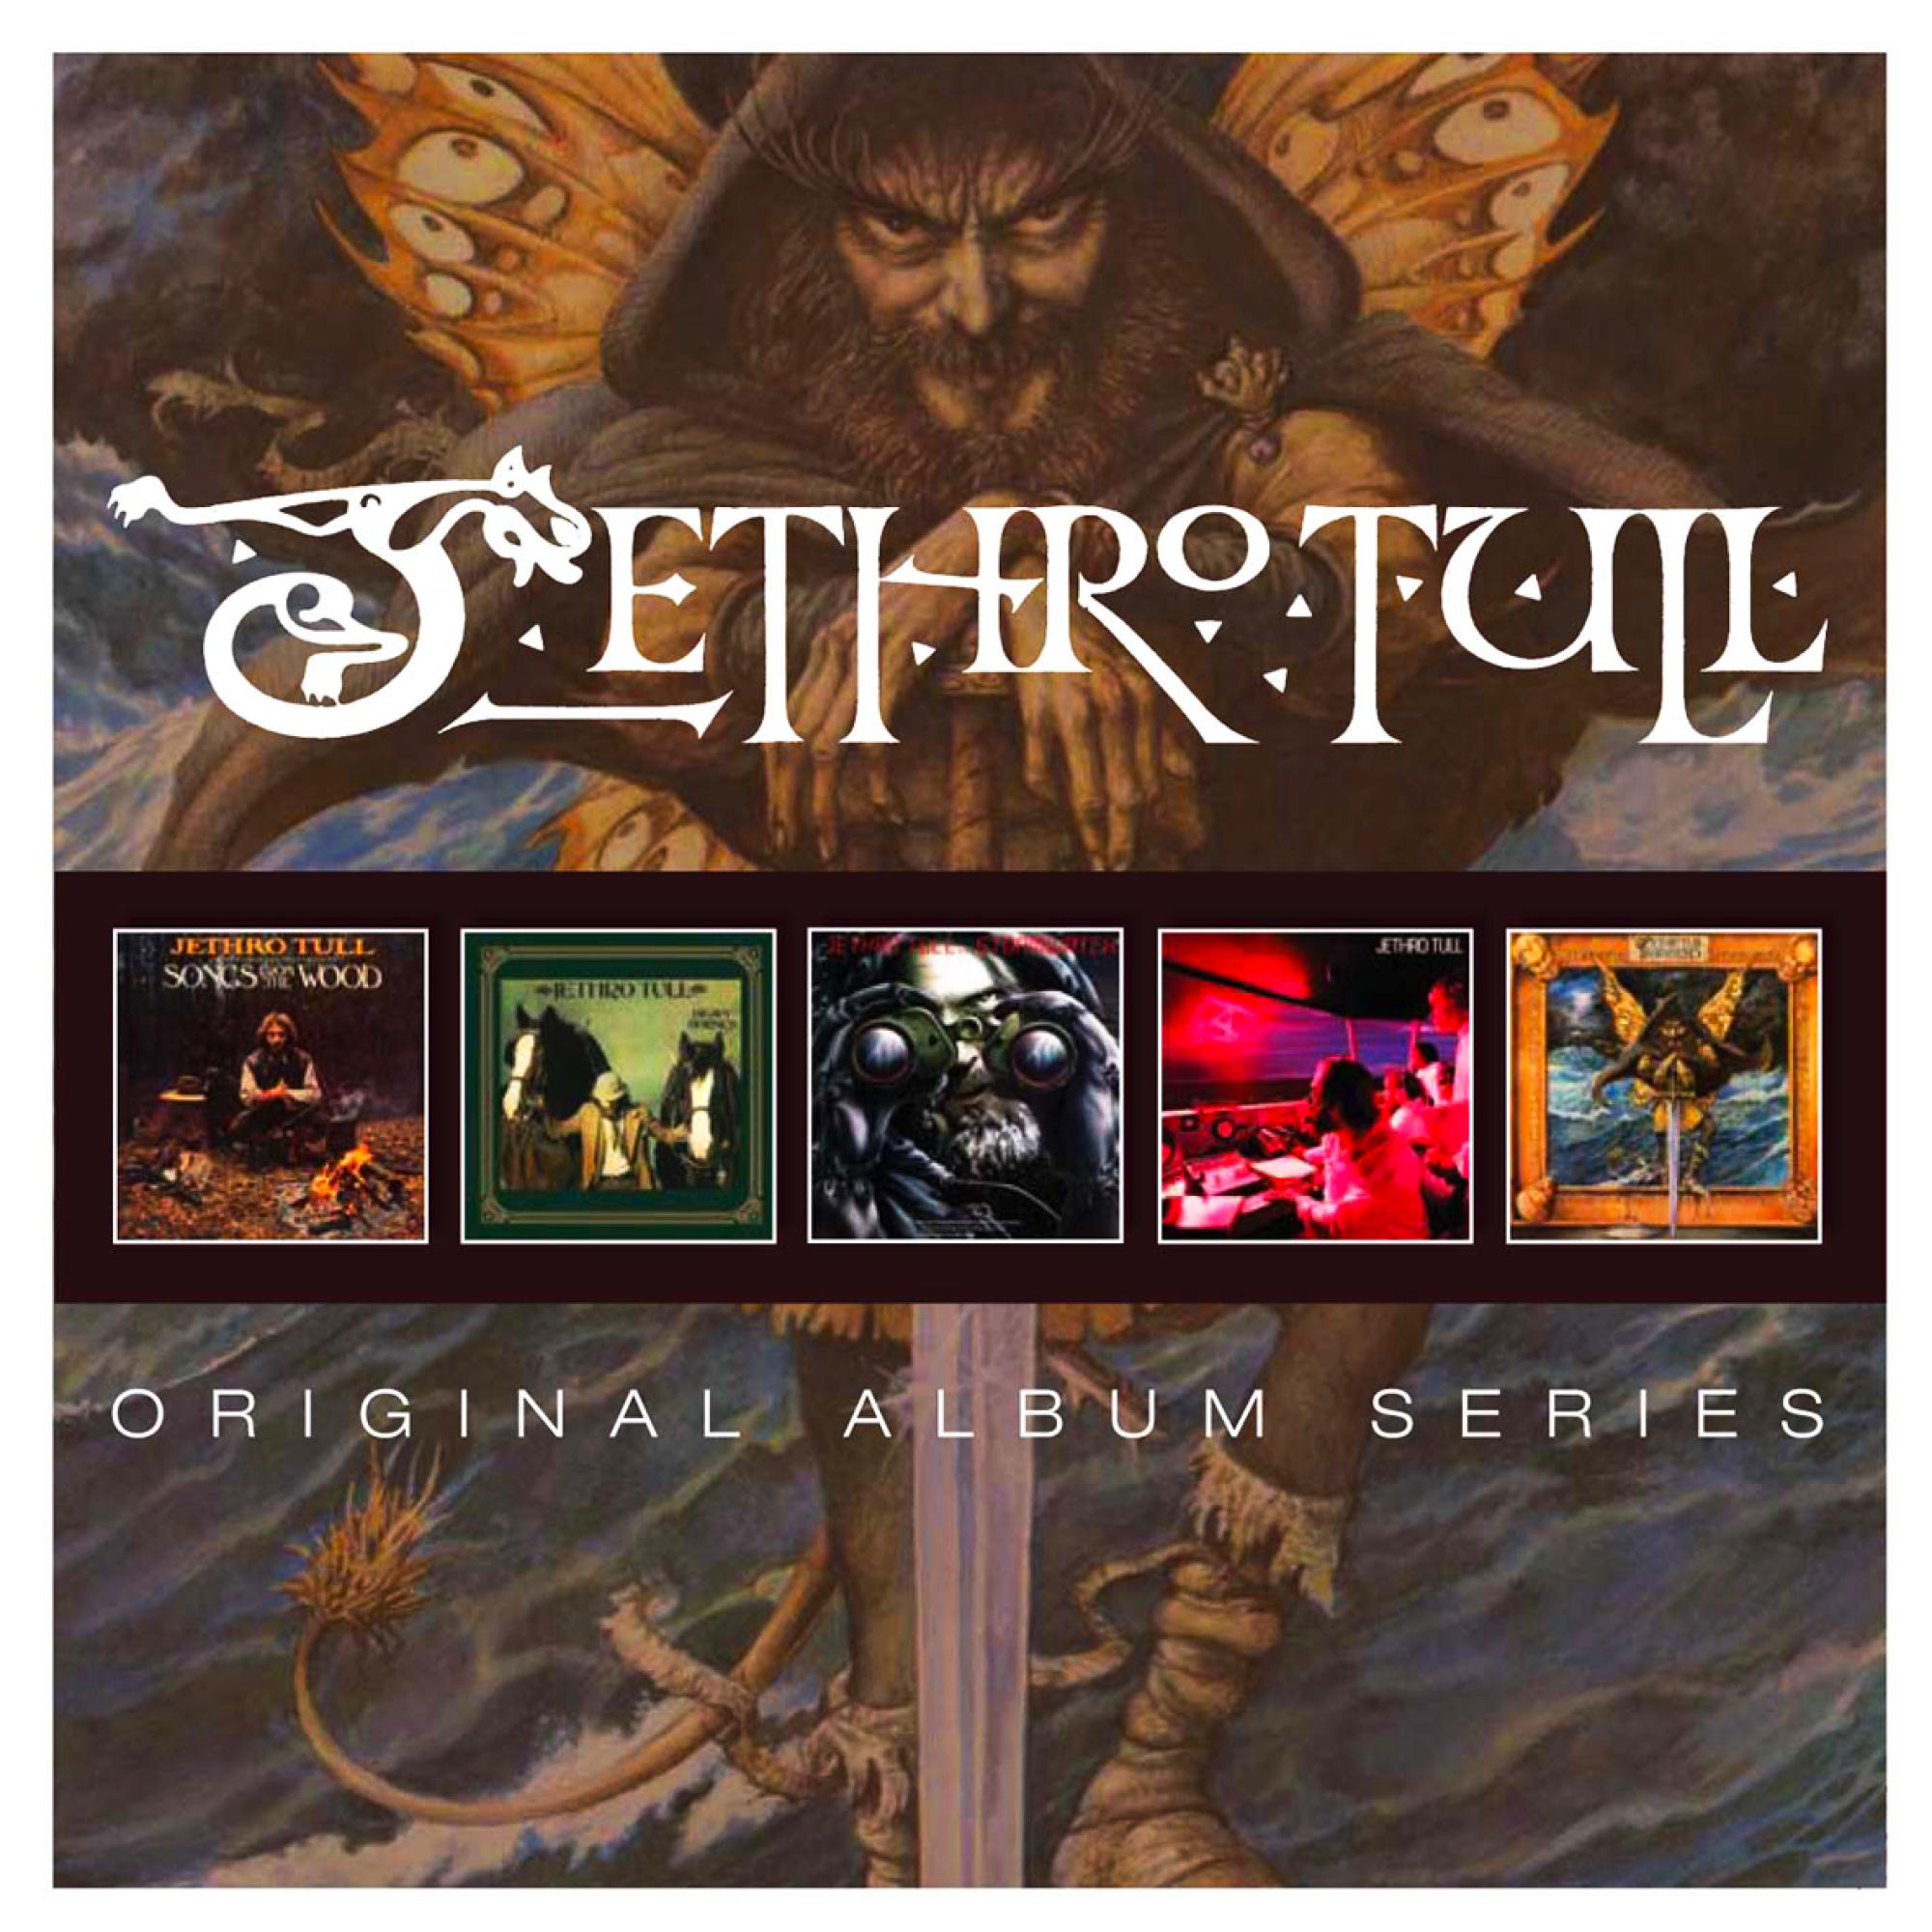 Jethro Tull - Original Album (CD) Cd Box) - Series (5